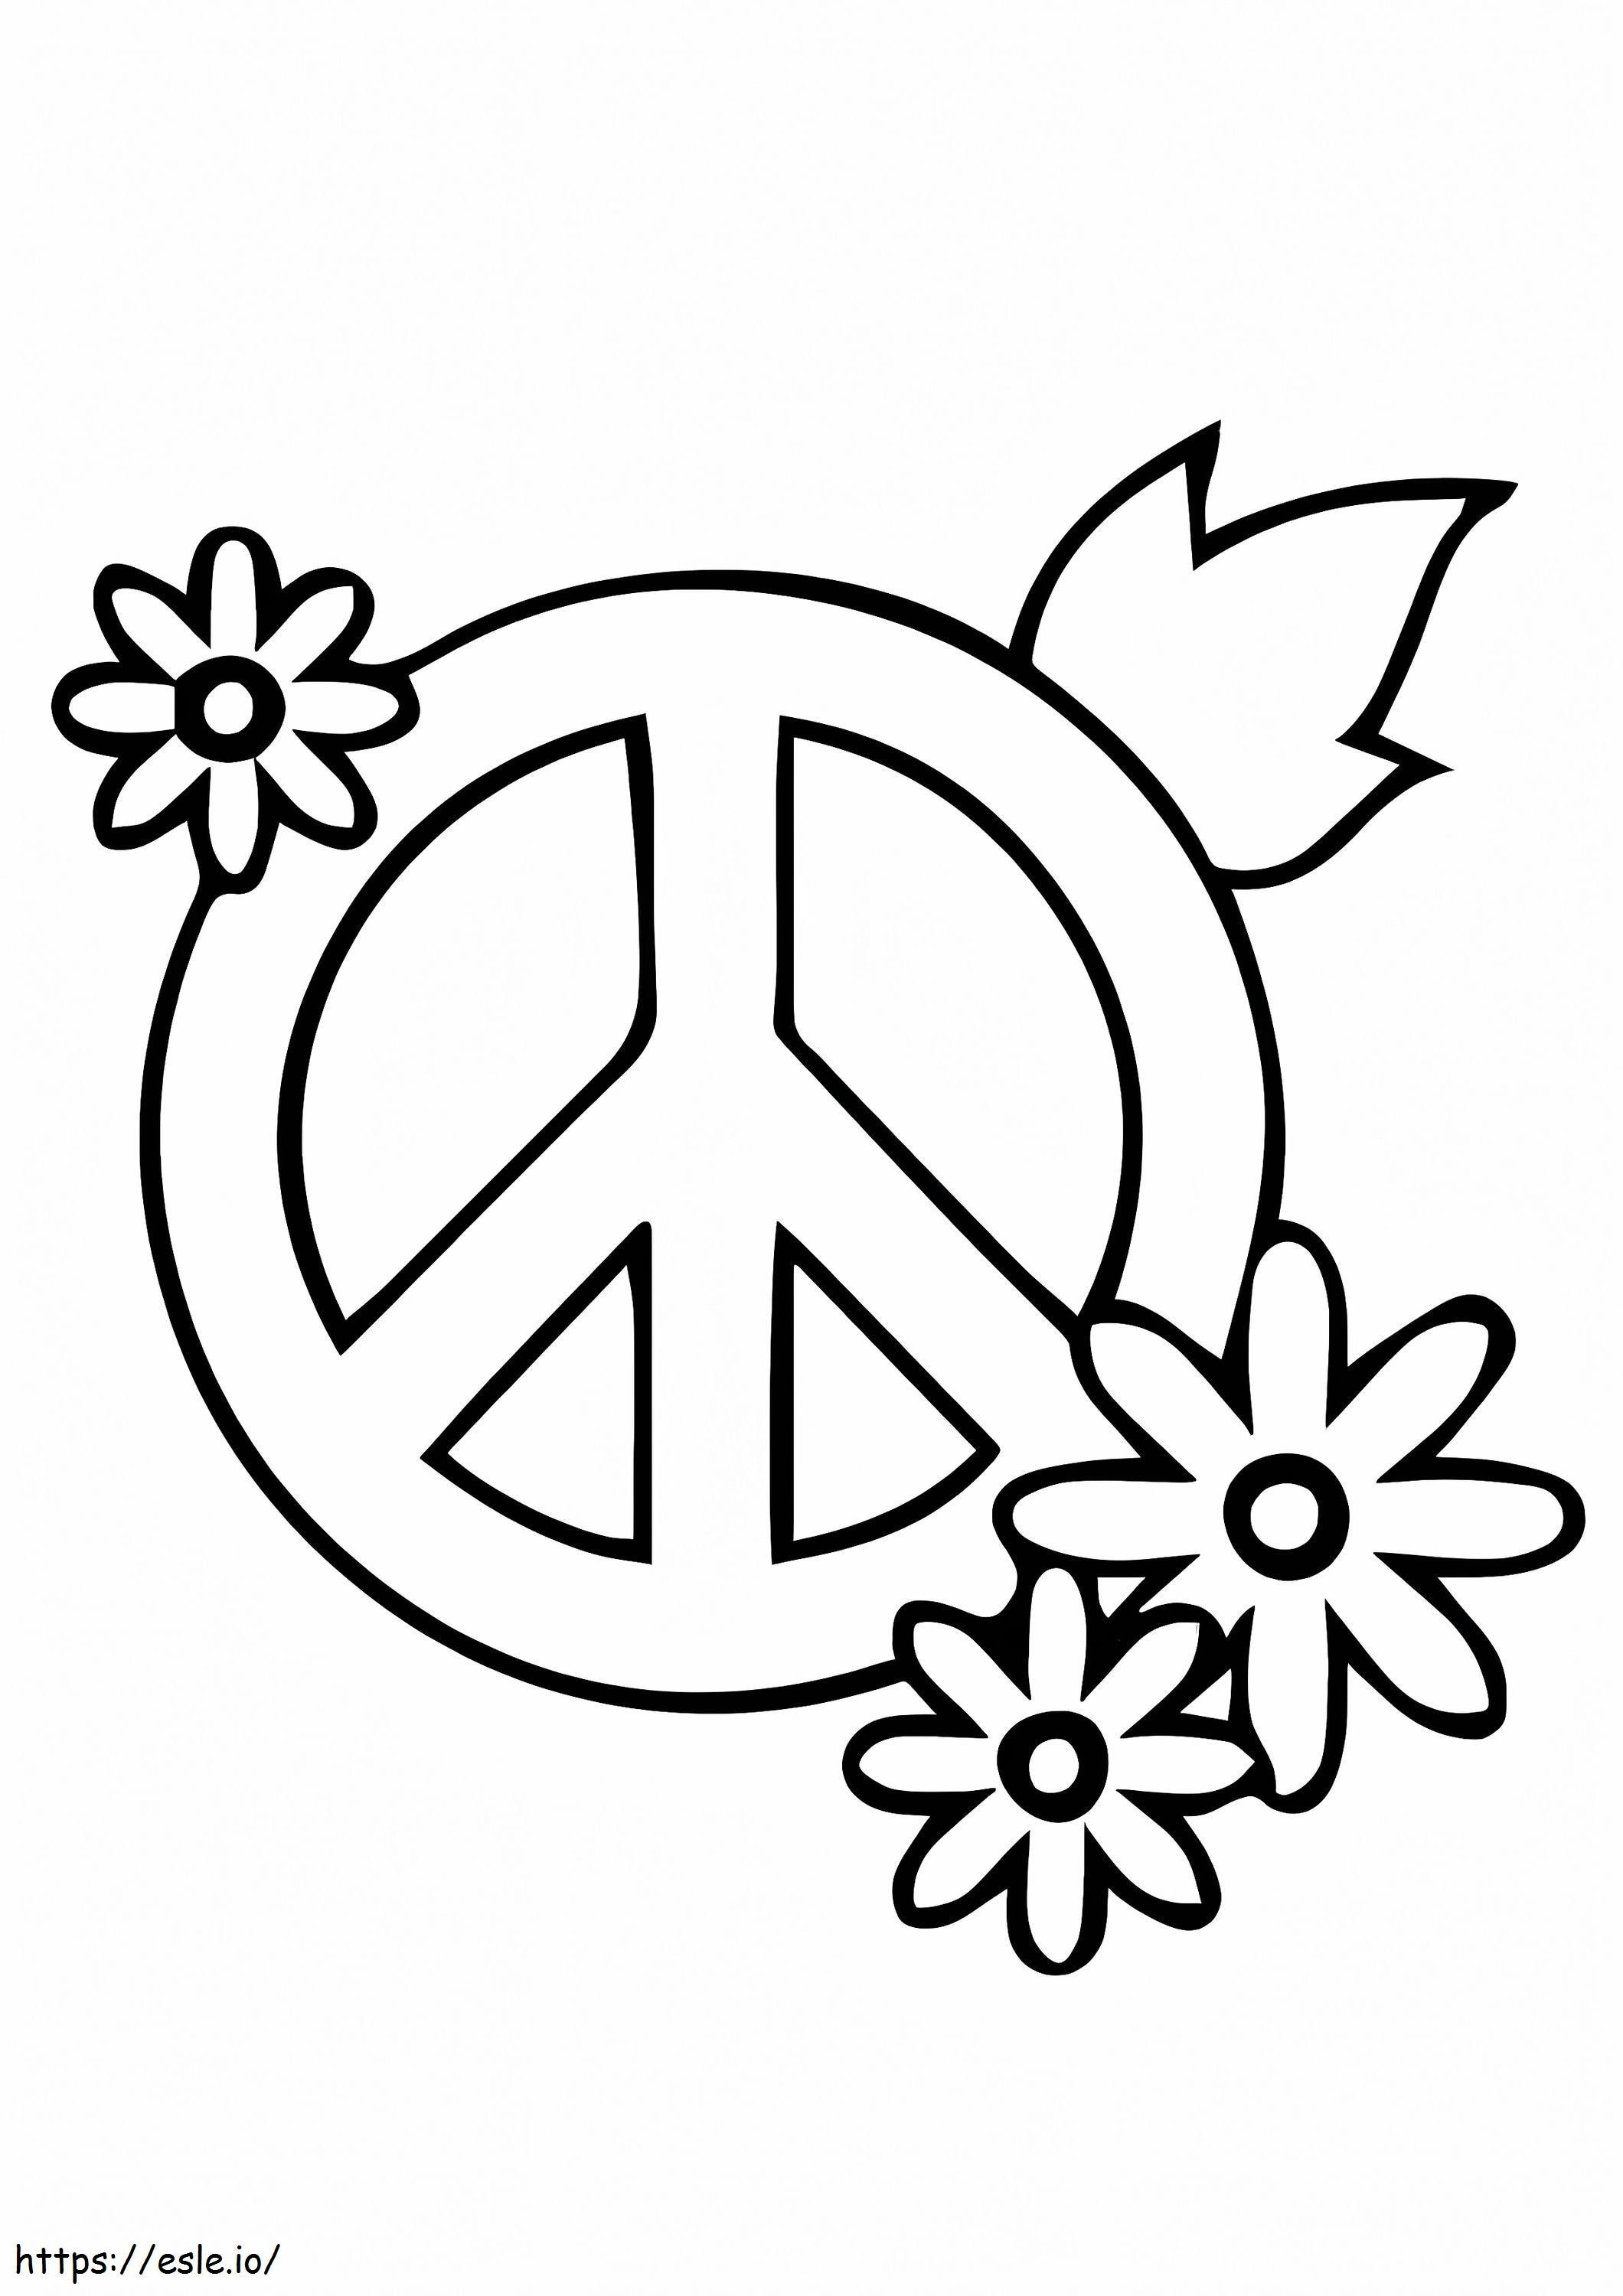 Friedenszeichen 5 ausmalbilder